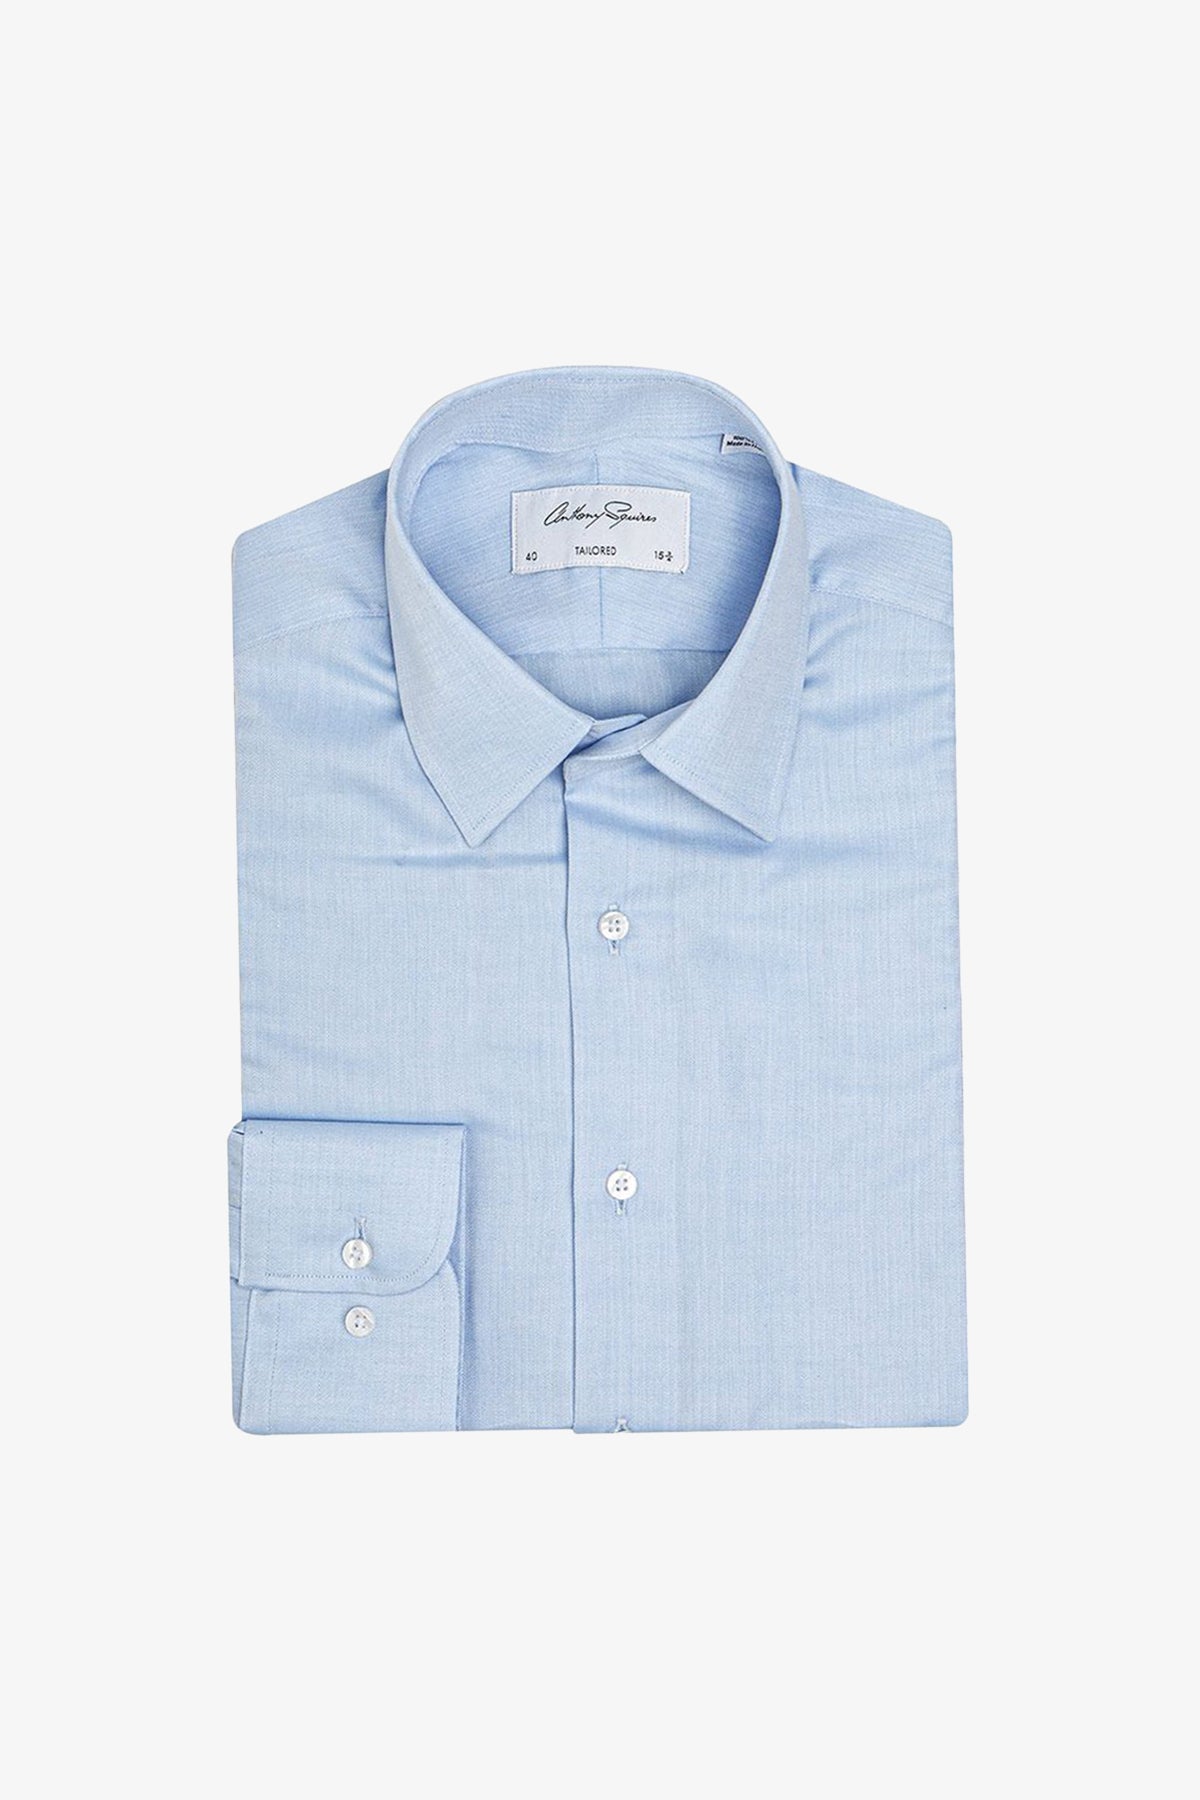 Norris - Light Blue Business shirt